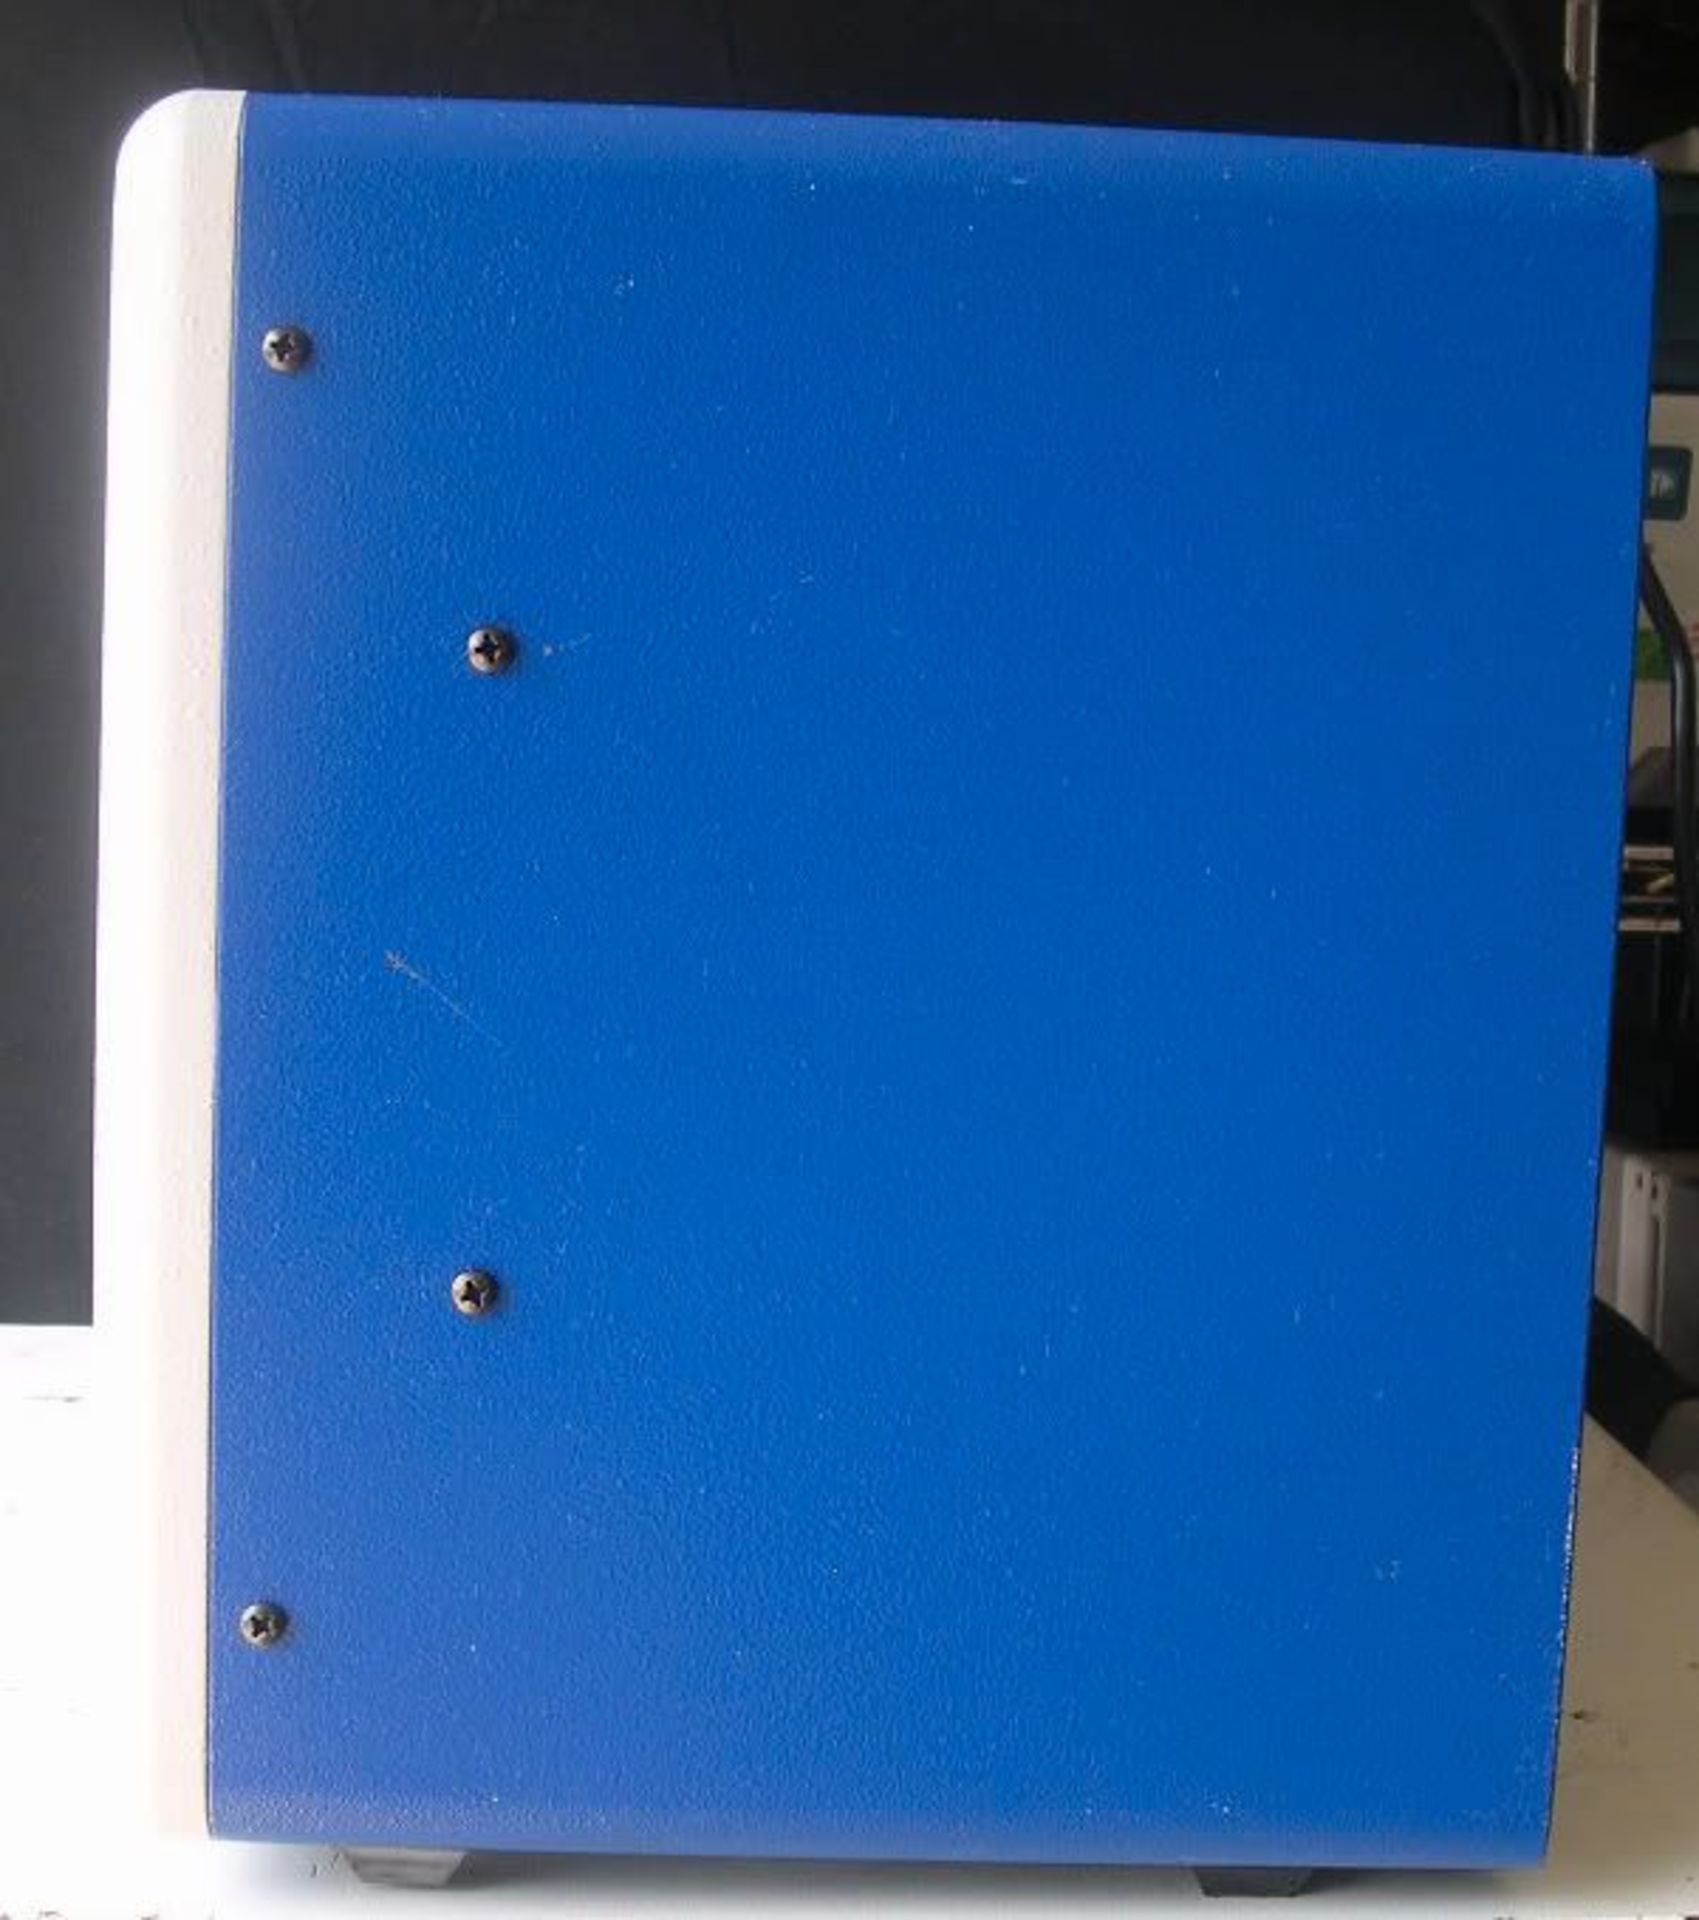 STRATAGENE UV Stratalinker 1800, Qty 1, 320528703724 - Image 3 of 3